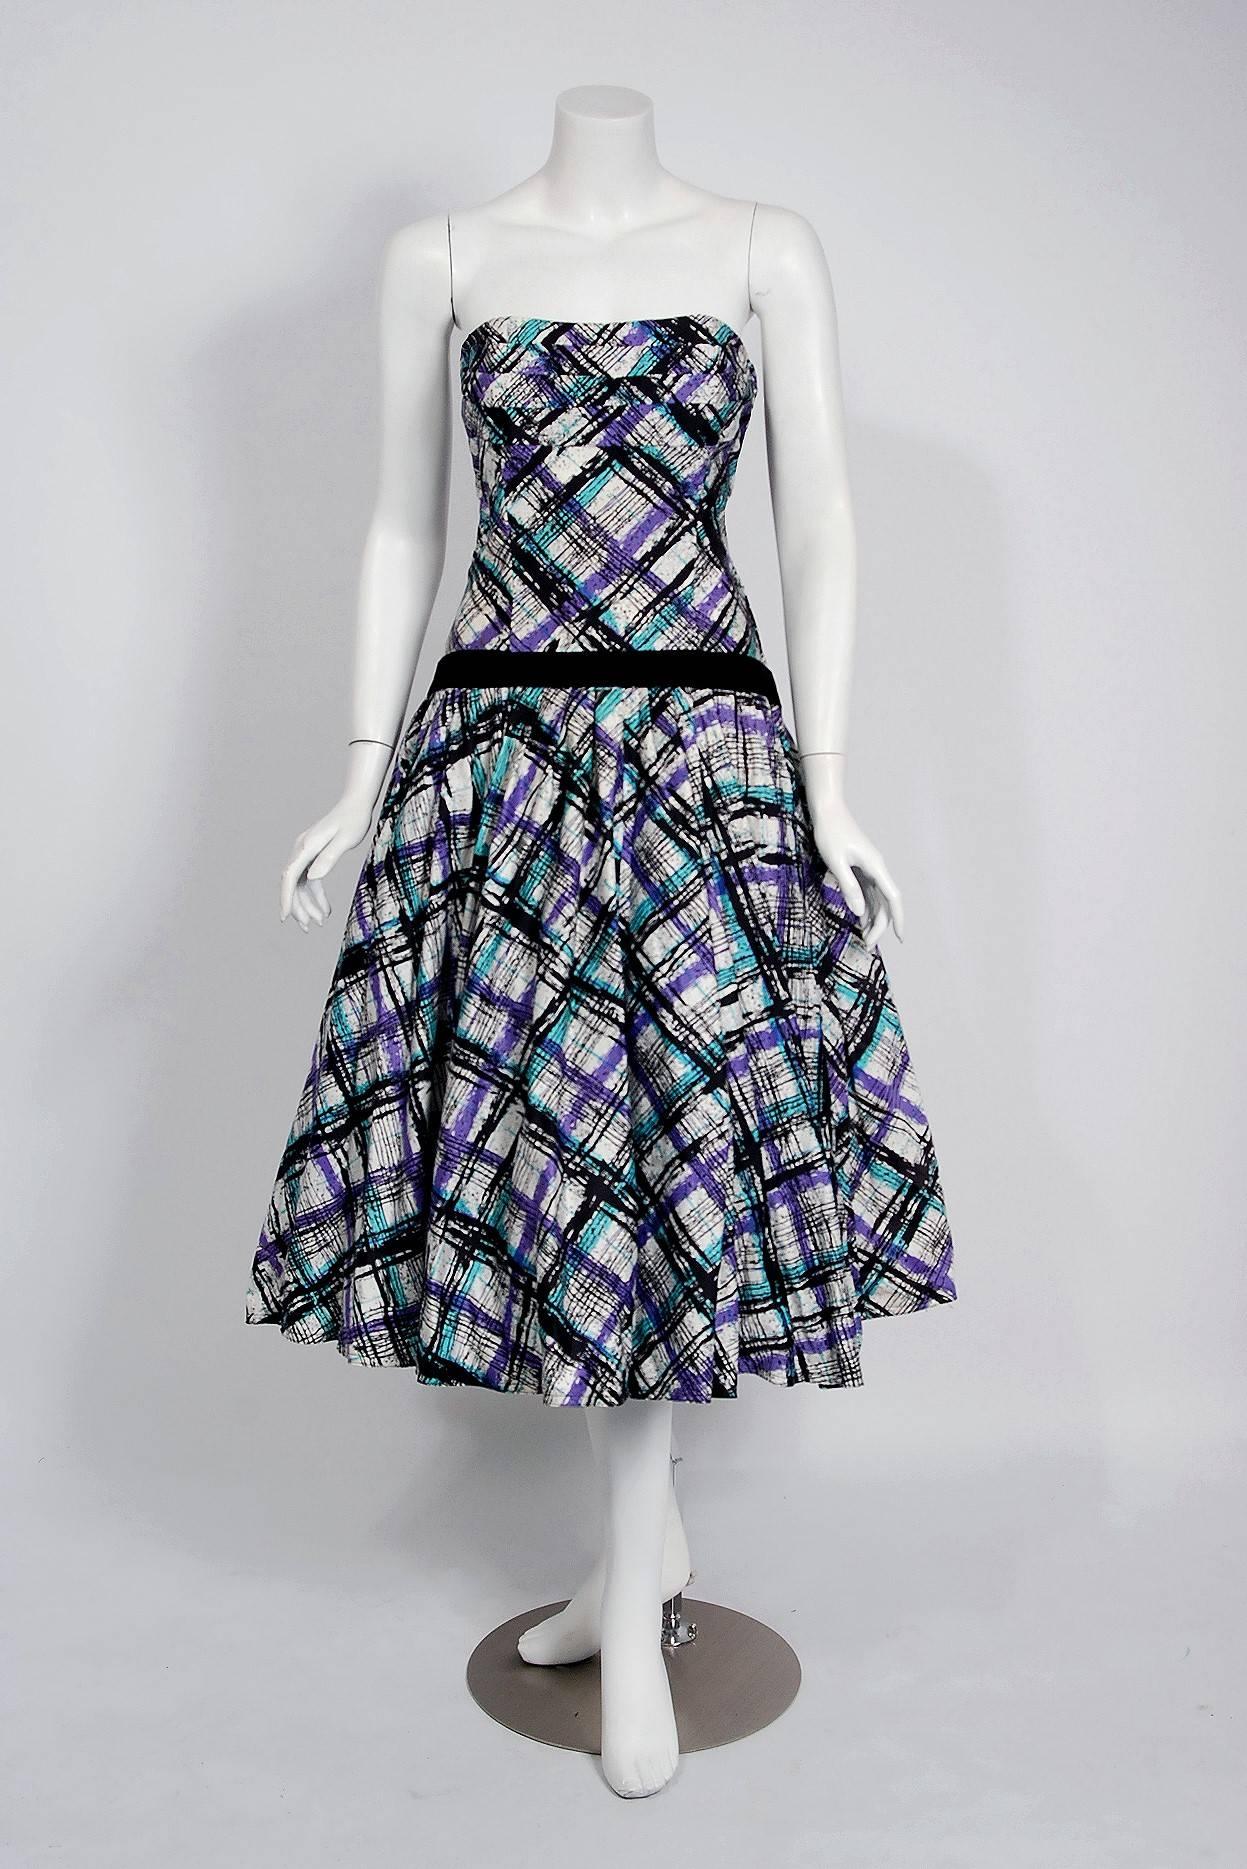 Dans ce magnifique ensemble de robe de soirée à carreaux graphiques des années 1950, la construction détaillée et l'attention méticuleuse portée aux détails sont comparables à ce que vous trouverez dans la couture moderne. Ce vêtement enchanteur est